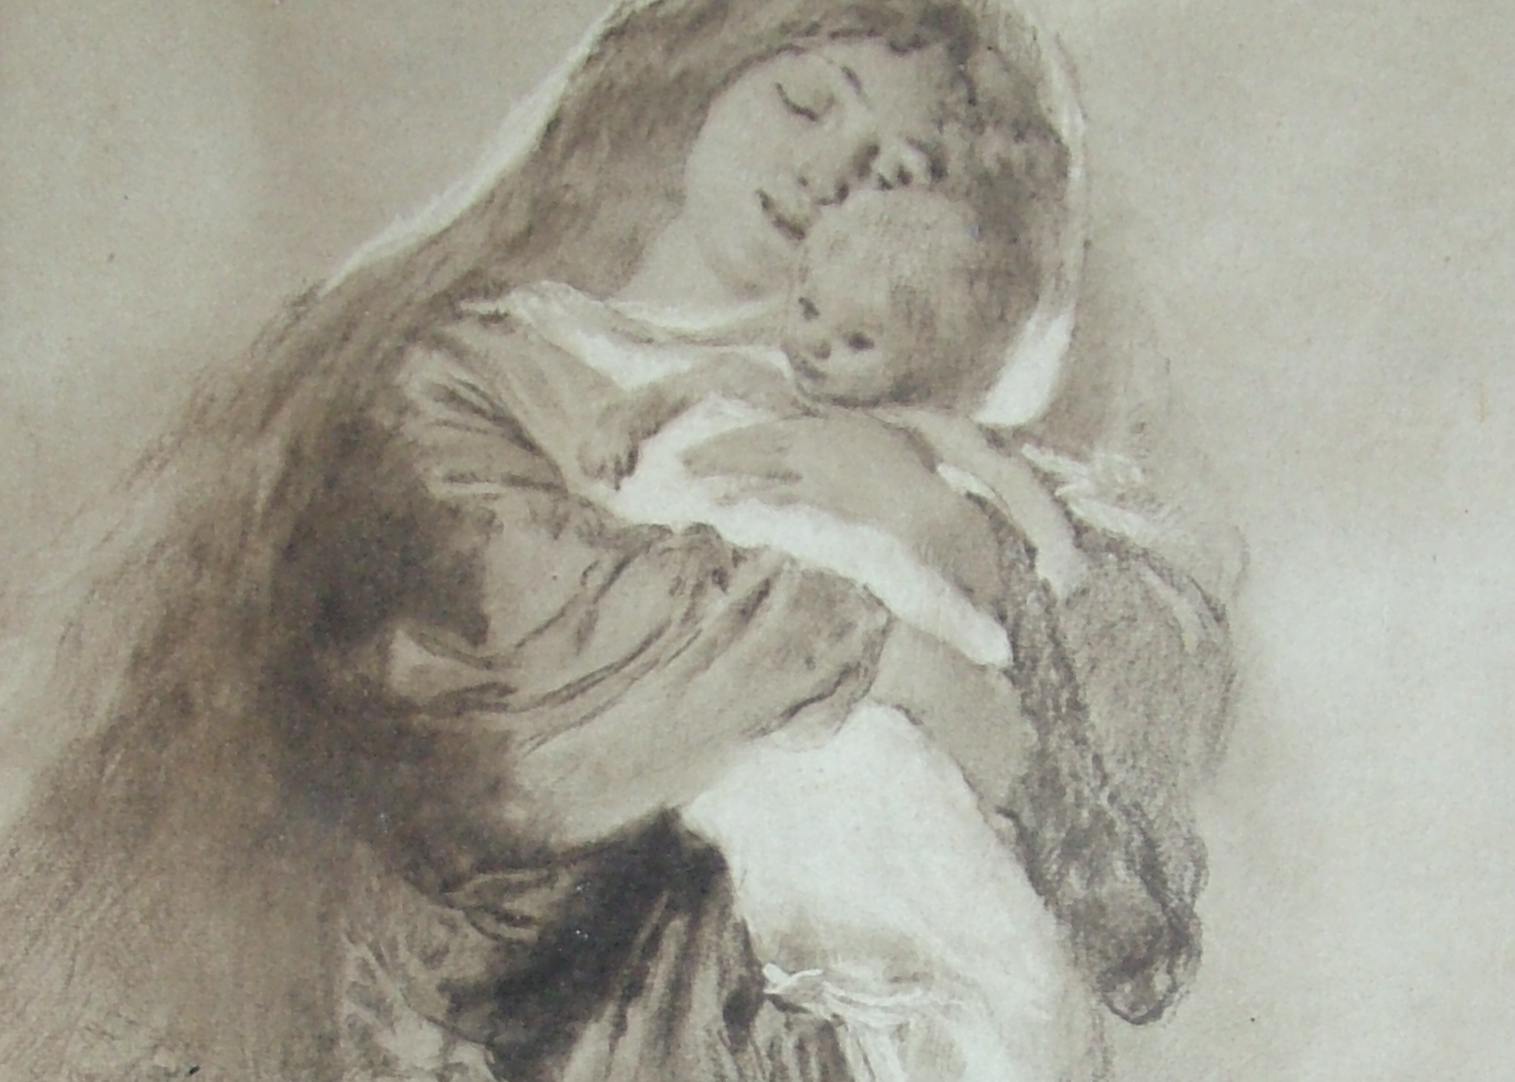 La fotografia in bianco e nero ritrae un quadro di Morelli con Madonna e bambino